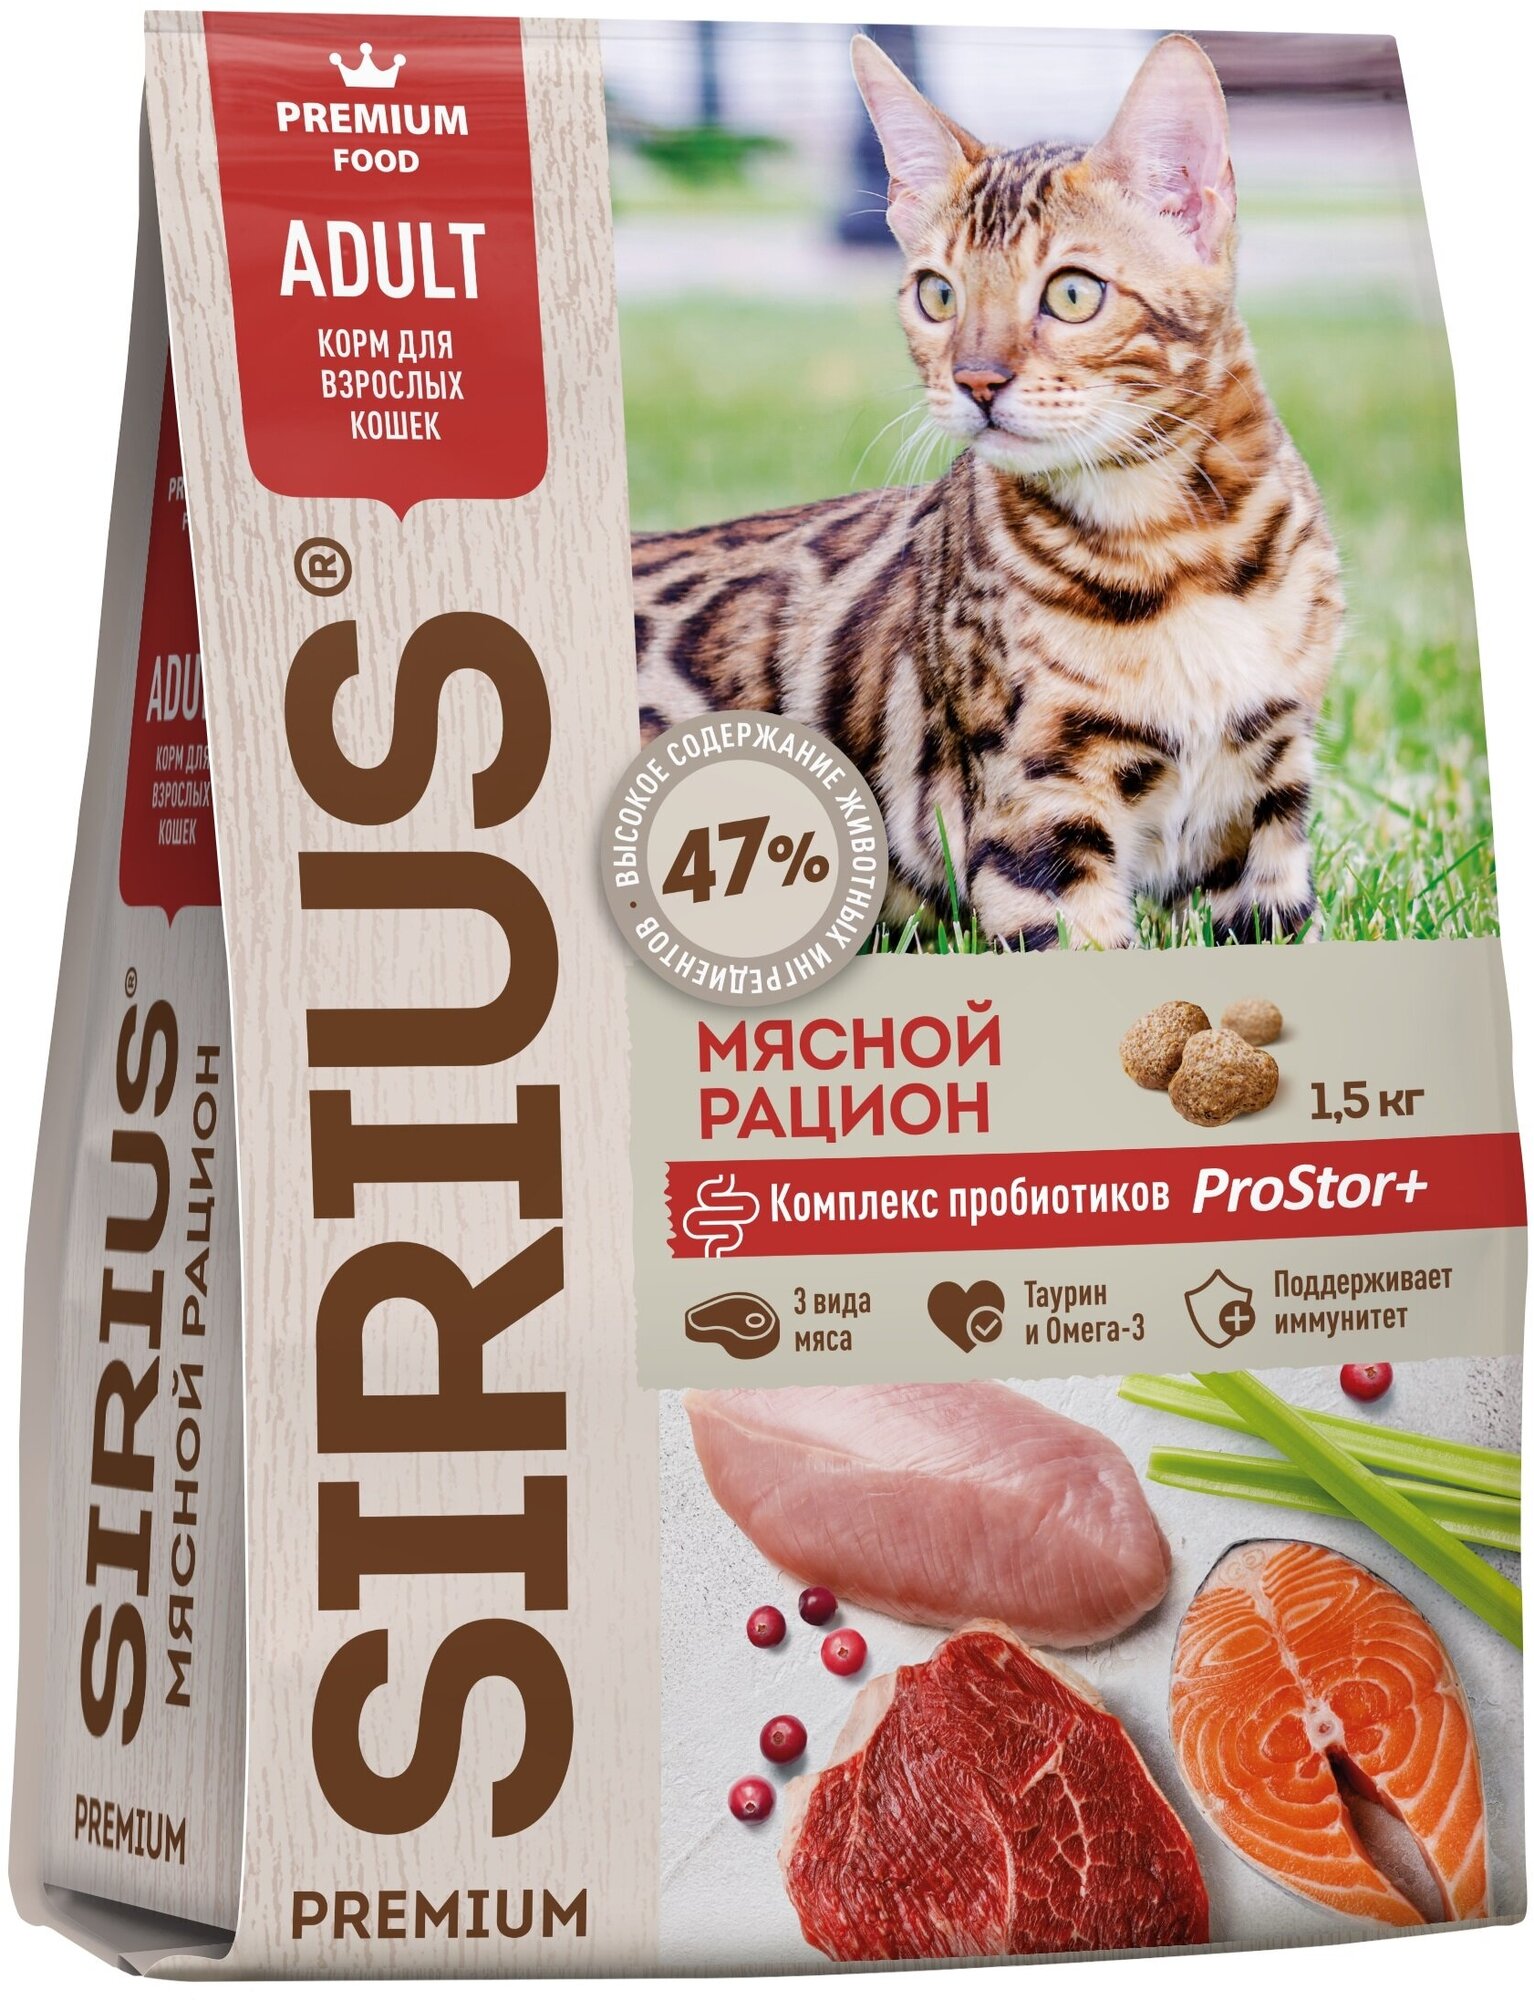 Sirius Сириус сухой полнорационный корм для взрослых кошек Мясной рацион 400гр